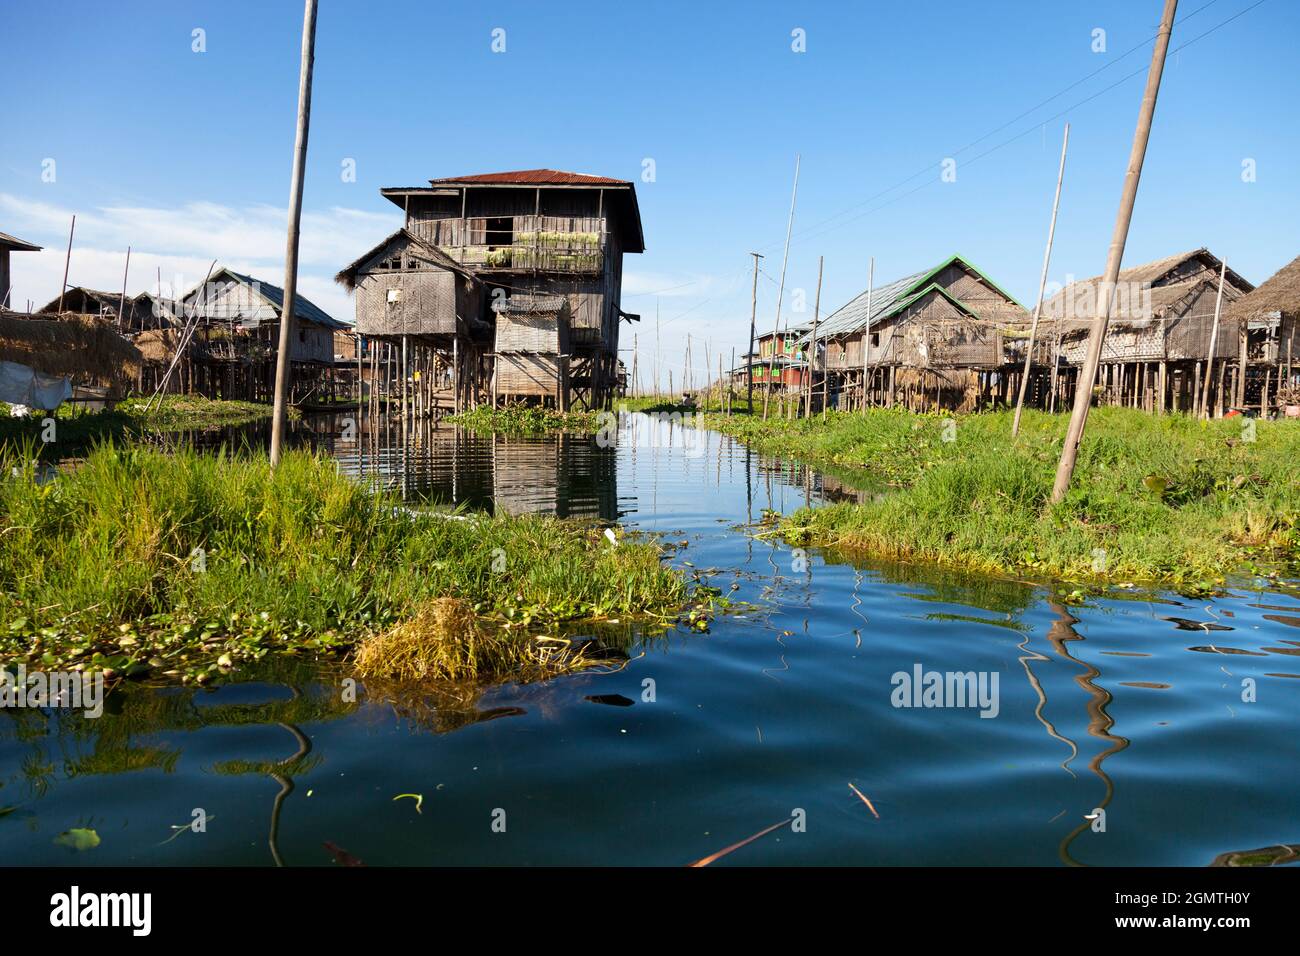 Lac Inle, Myanmar - 1er février 2013; les villages indiens Intha près du lac Inle, au Myanmar, sont généralement construits sur pilotis pour se protéger contre les fréquentes inondations Banque D'Images